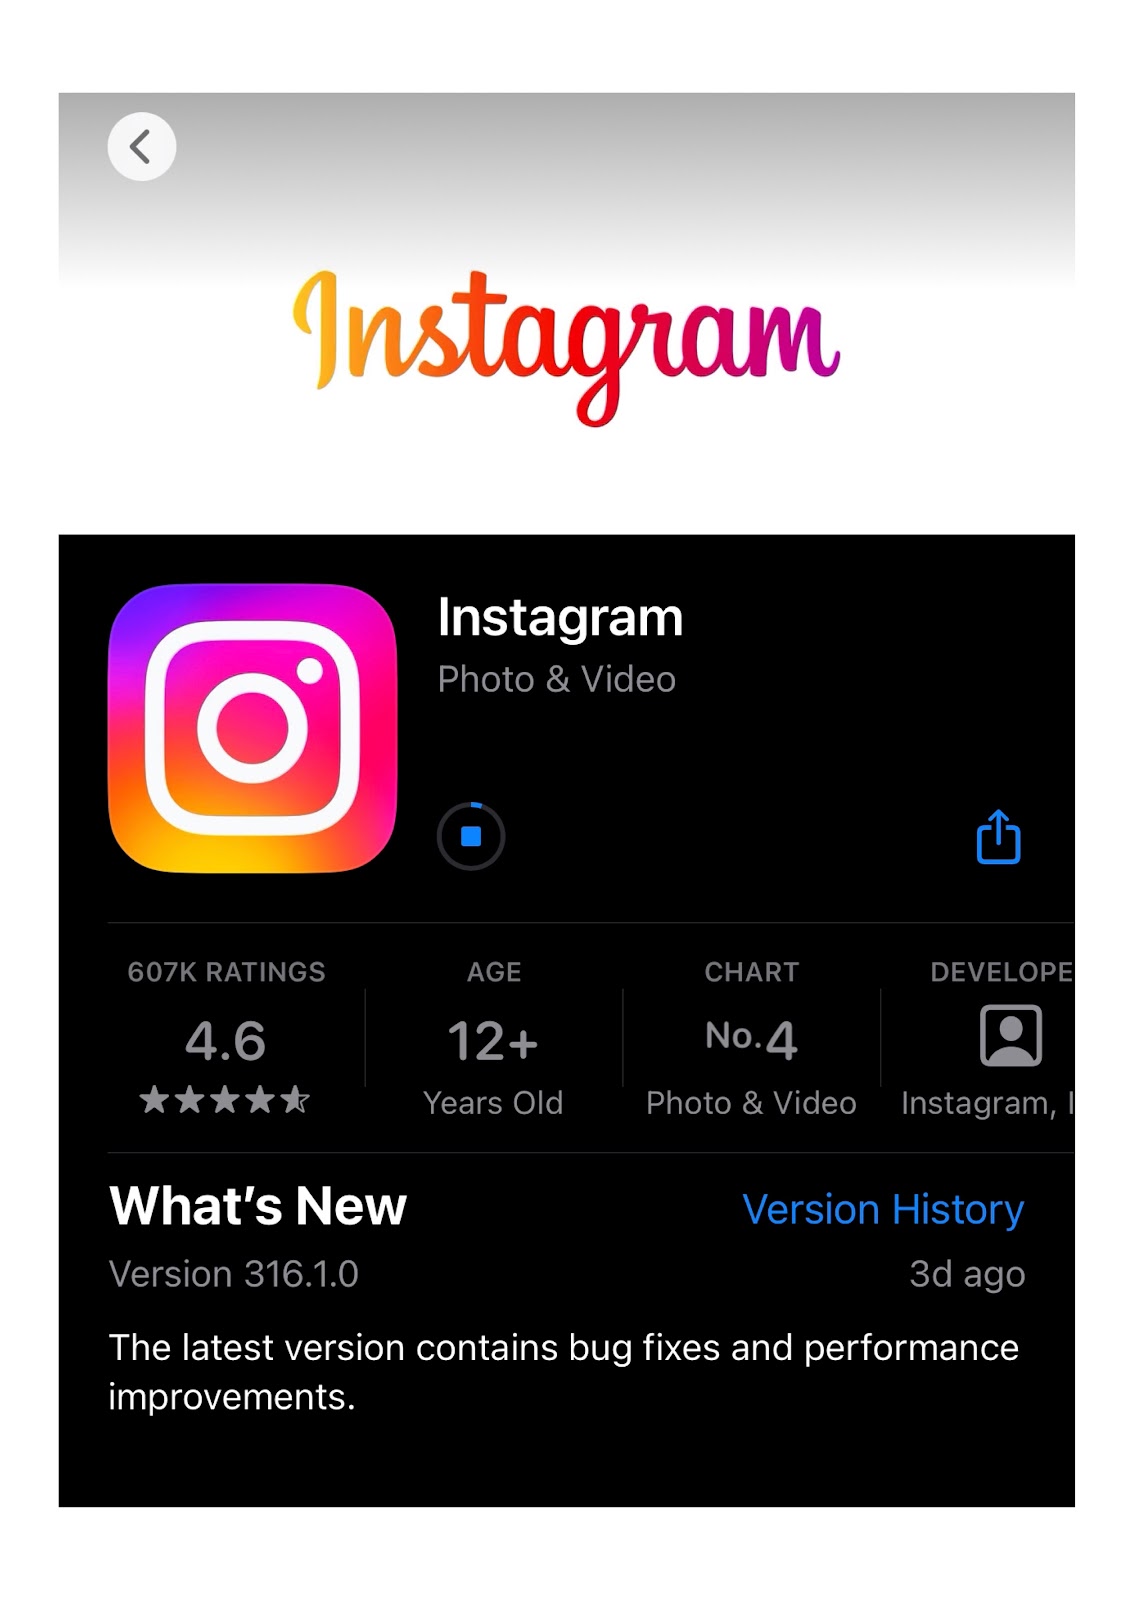 Download the Instagram App